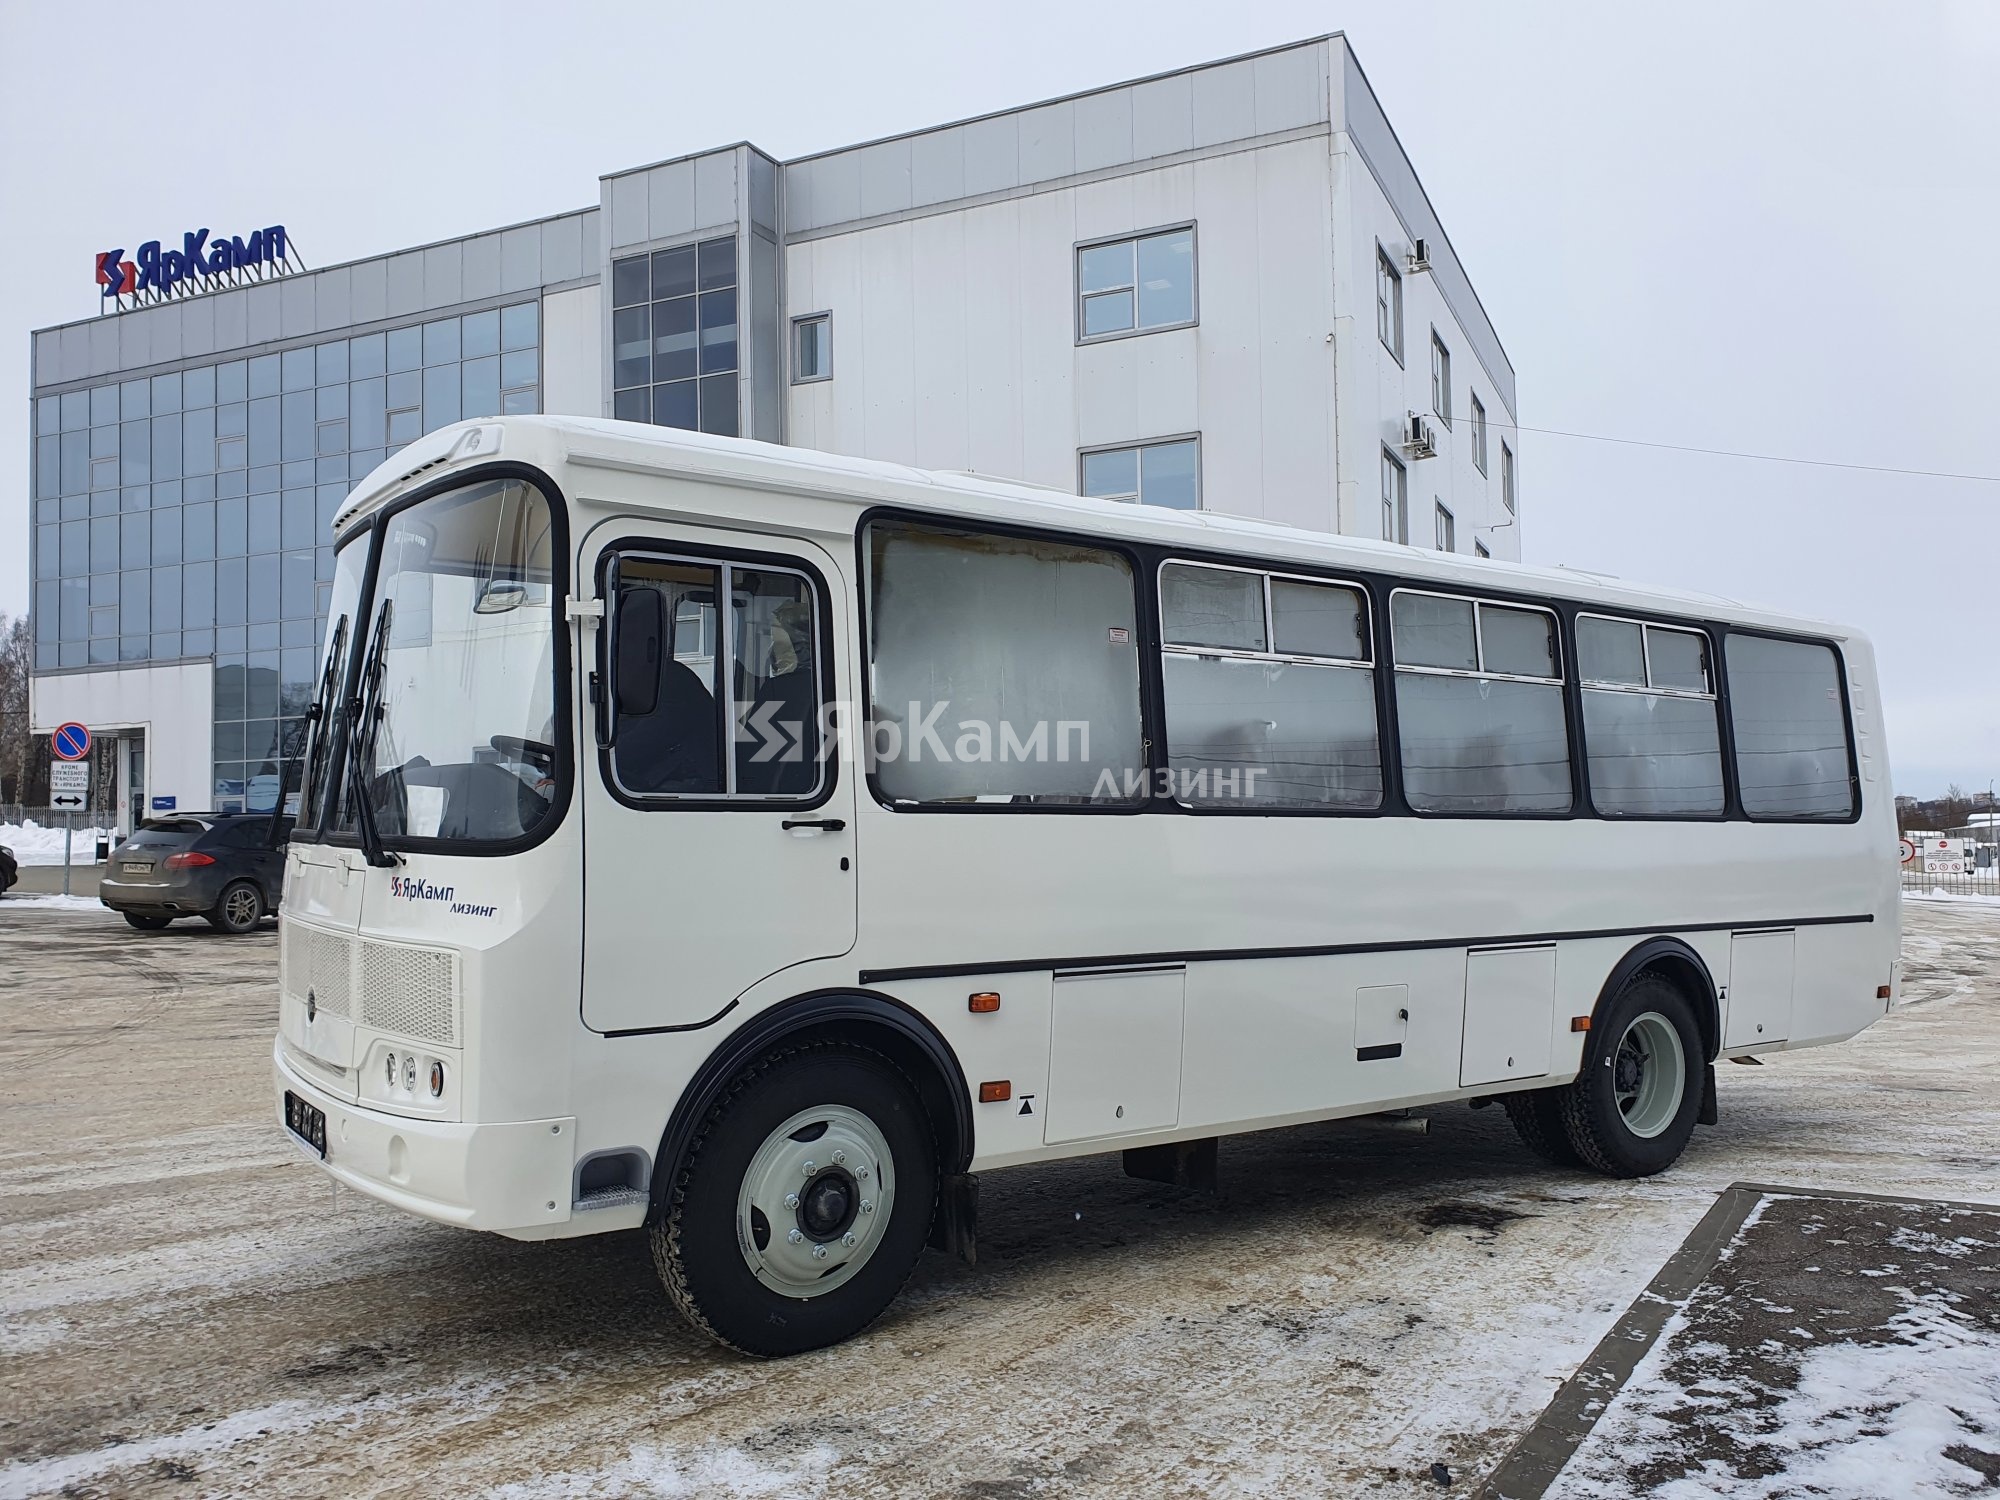 Автобус ПАЗ 4234-04 отгружен на условиях финансовой аренды